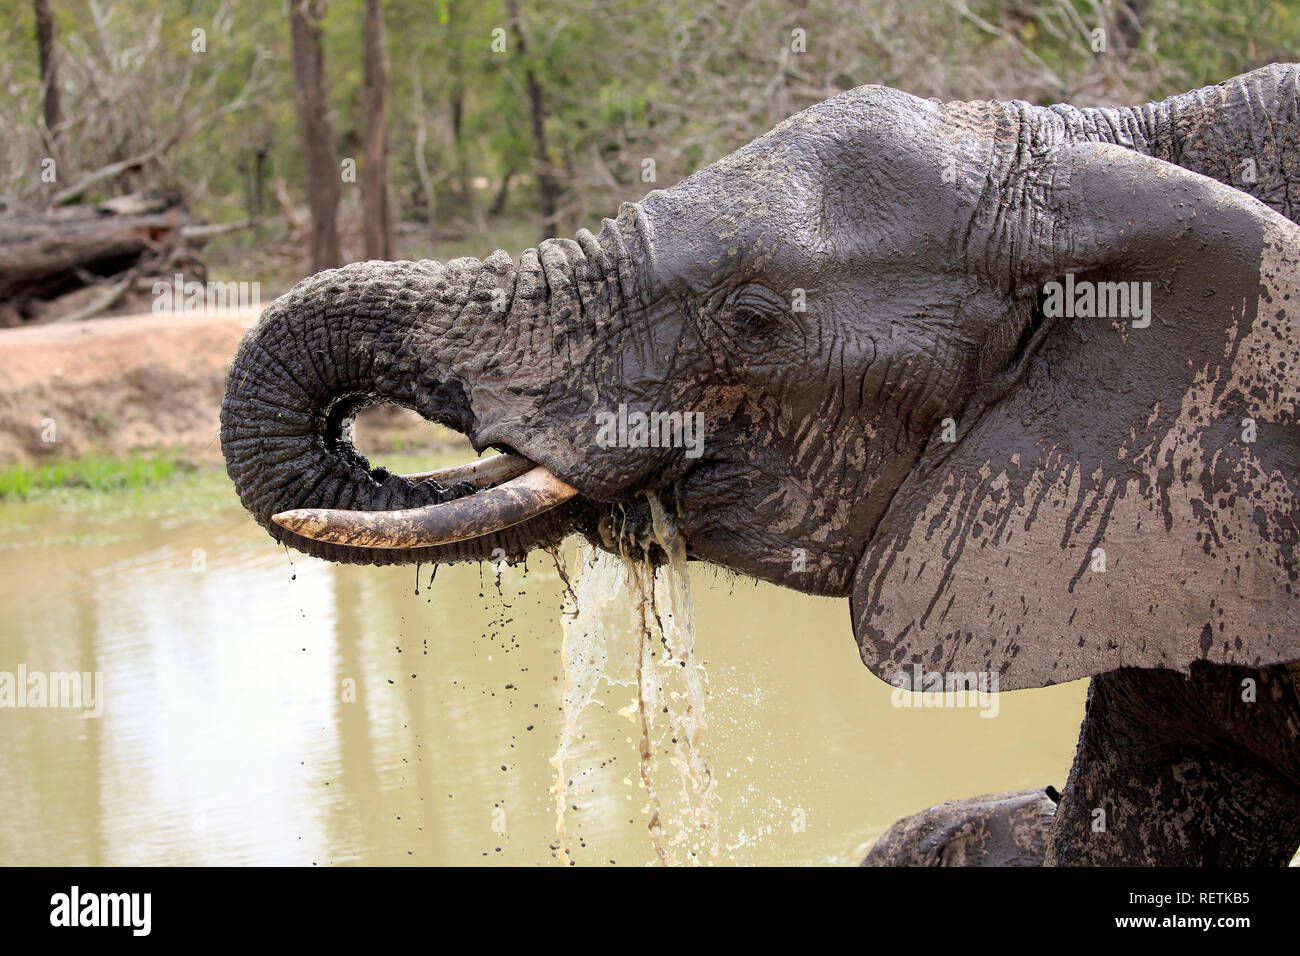 L'éléphant africain, adulte à l'eau eau potable, portrait, Sabi Sand Game Reserve, parc national Kruger, Afrique du Sud, d'Afrique (Loxodonta africana), Banque D'Images